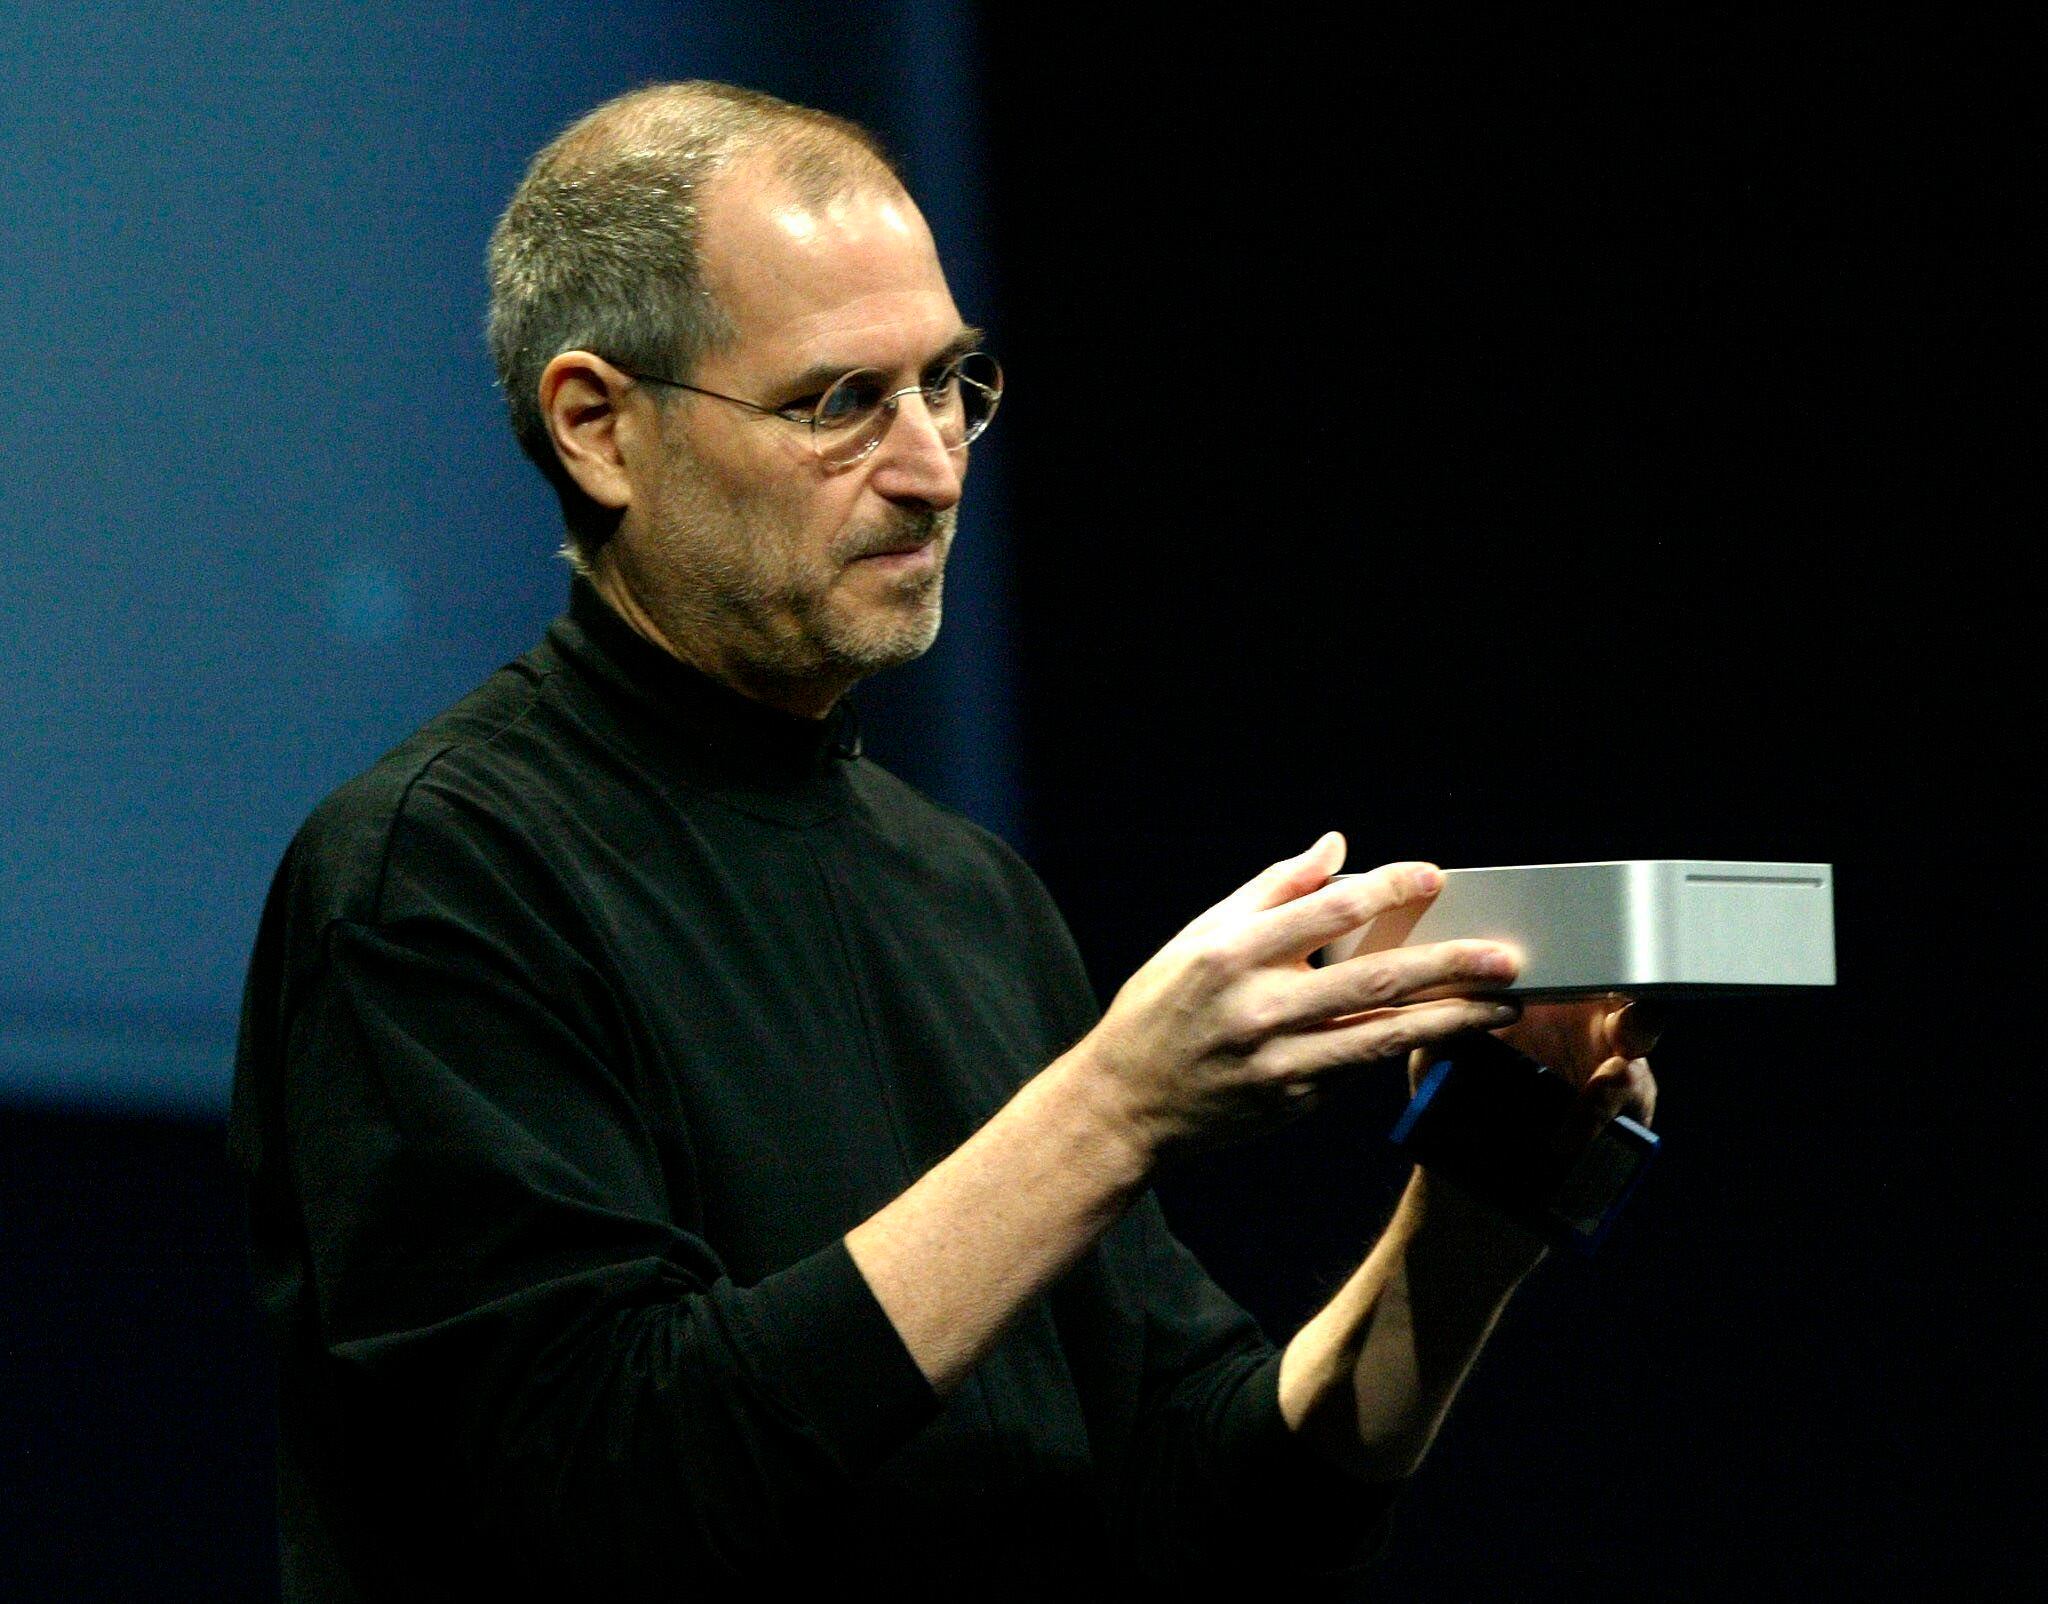 La meticulosidad y la visión de Steve Jobs, cofundador de Apple y NeXT, en la selección de los electrodomésticos de su hogar reflejan su pasión por el diseño y la eficiencia. (EPA/JOHN G. MABANGLO) 